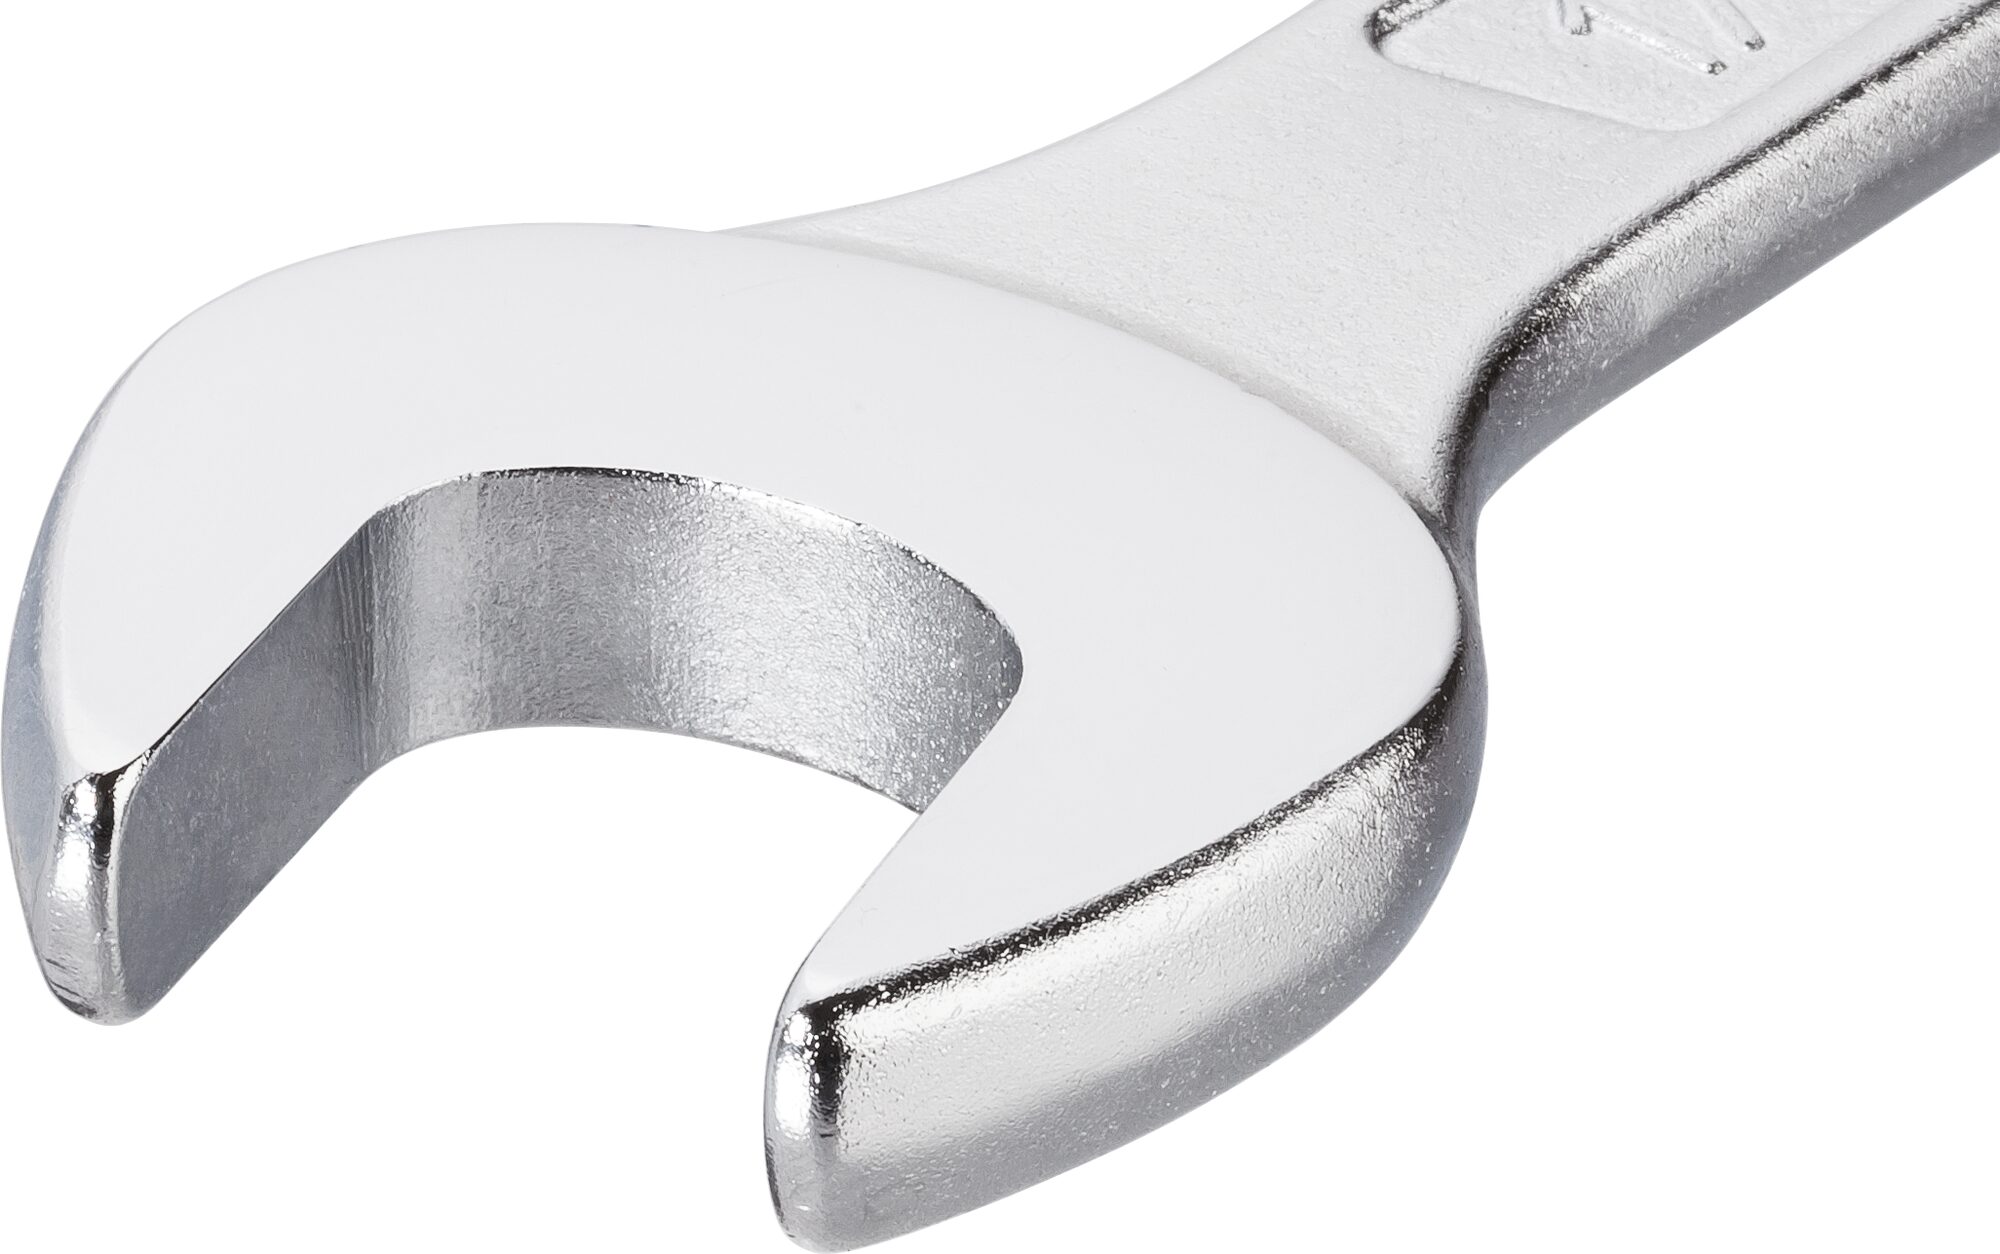 HAZET Ring-Maulschlüssel 600N-36 · Außen Doppel-Sechskant-Tractionsprofil · 36 mm